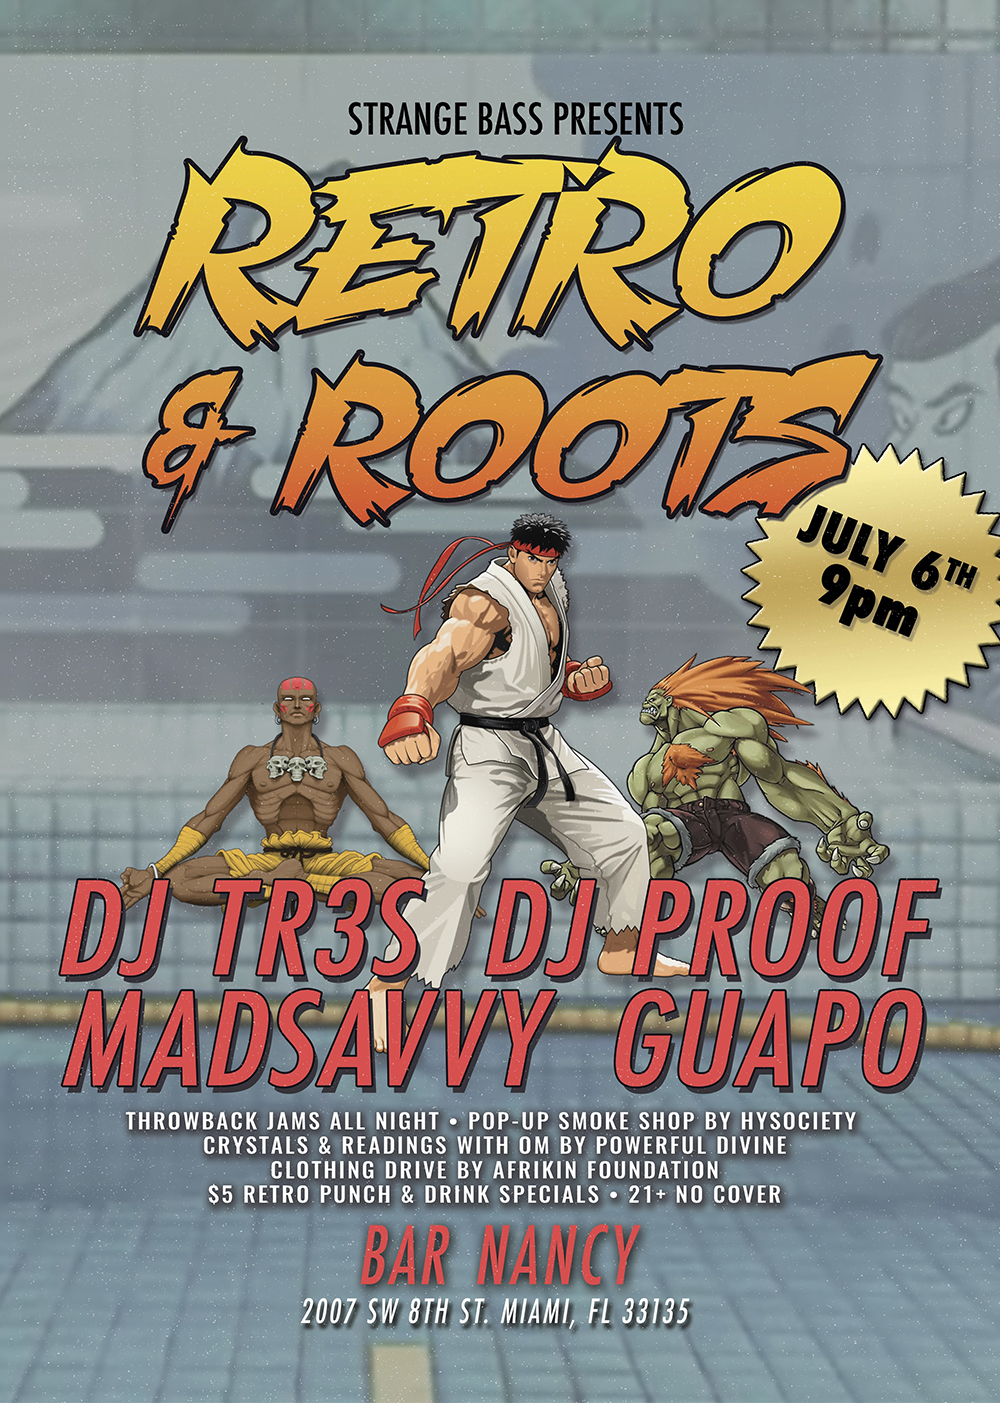 Retro & Roots - DJ TR3S - DJ PROOF - MADSAVVY - GUAPO at Bar Nancy - July 6th at 9pm